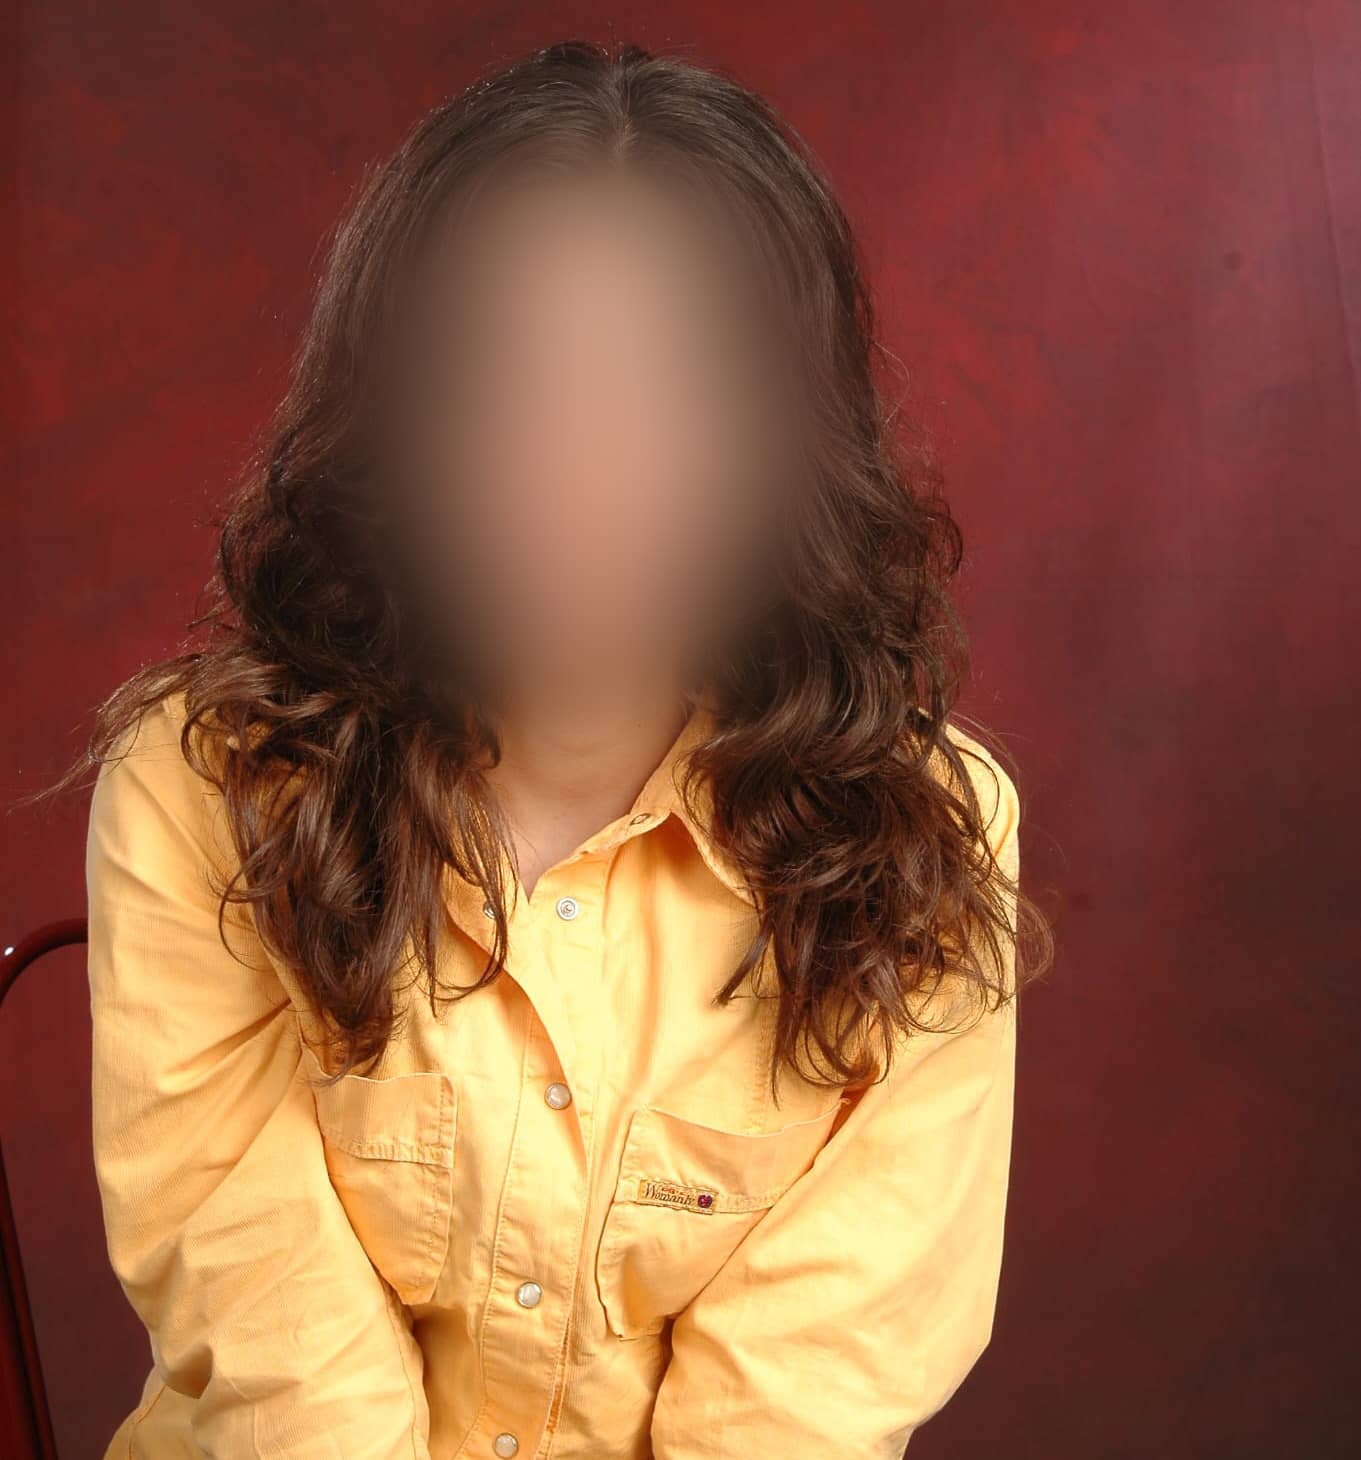 Zu ihrem 18. Geburtstag lässt sich Maha Zamani mit offenen Haaren und nach vorn gelehnter Pose fotografieren. Eine junge Frau, die mit den Regeln der Sittenwächter wenig anfangen kann.